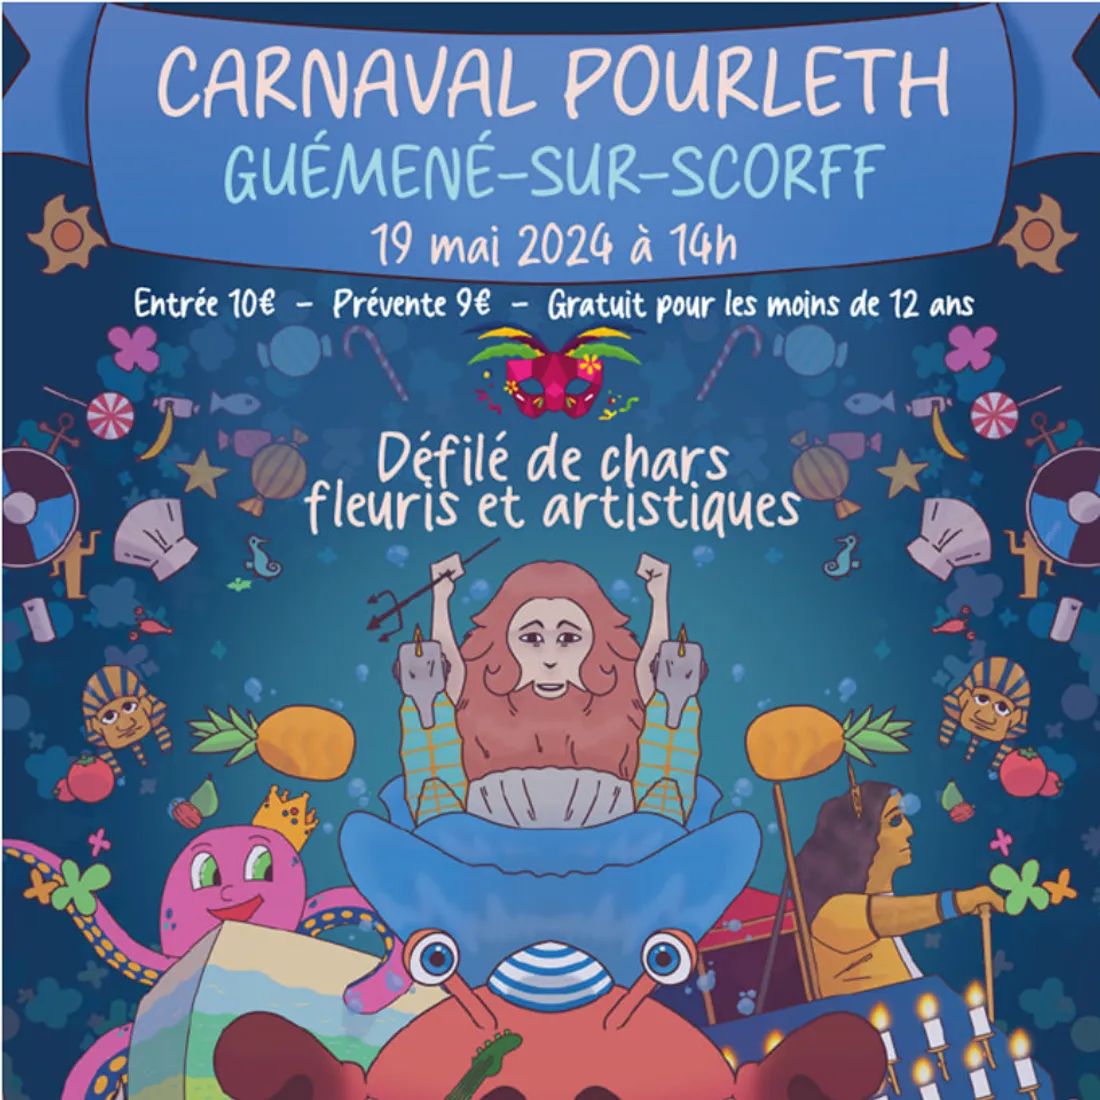 Le carnaval de Guéméné-sur-Scorff 2024